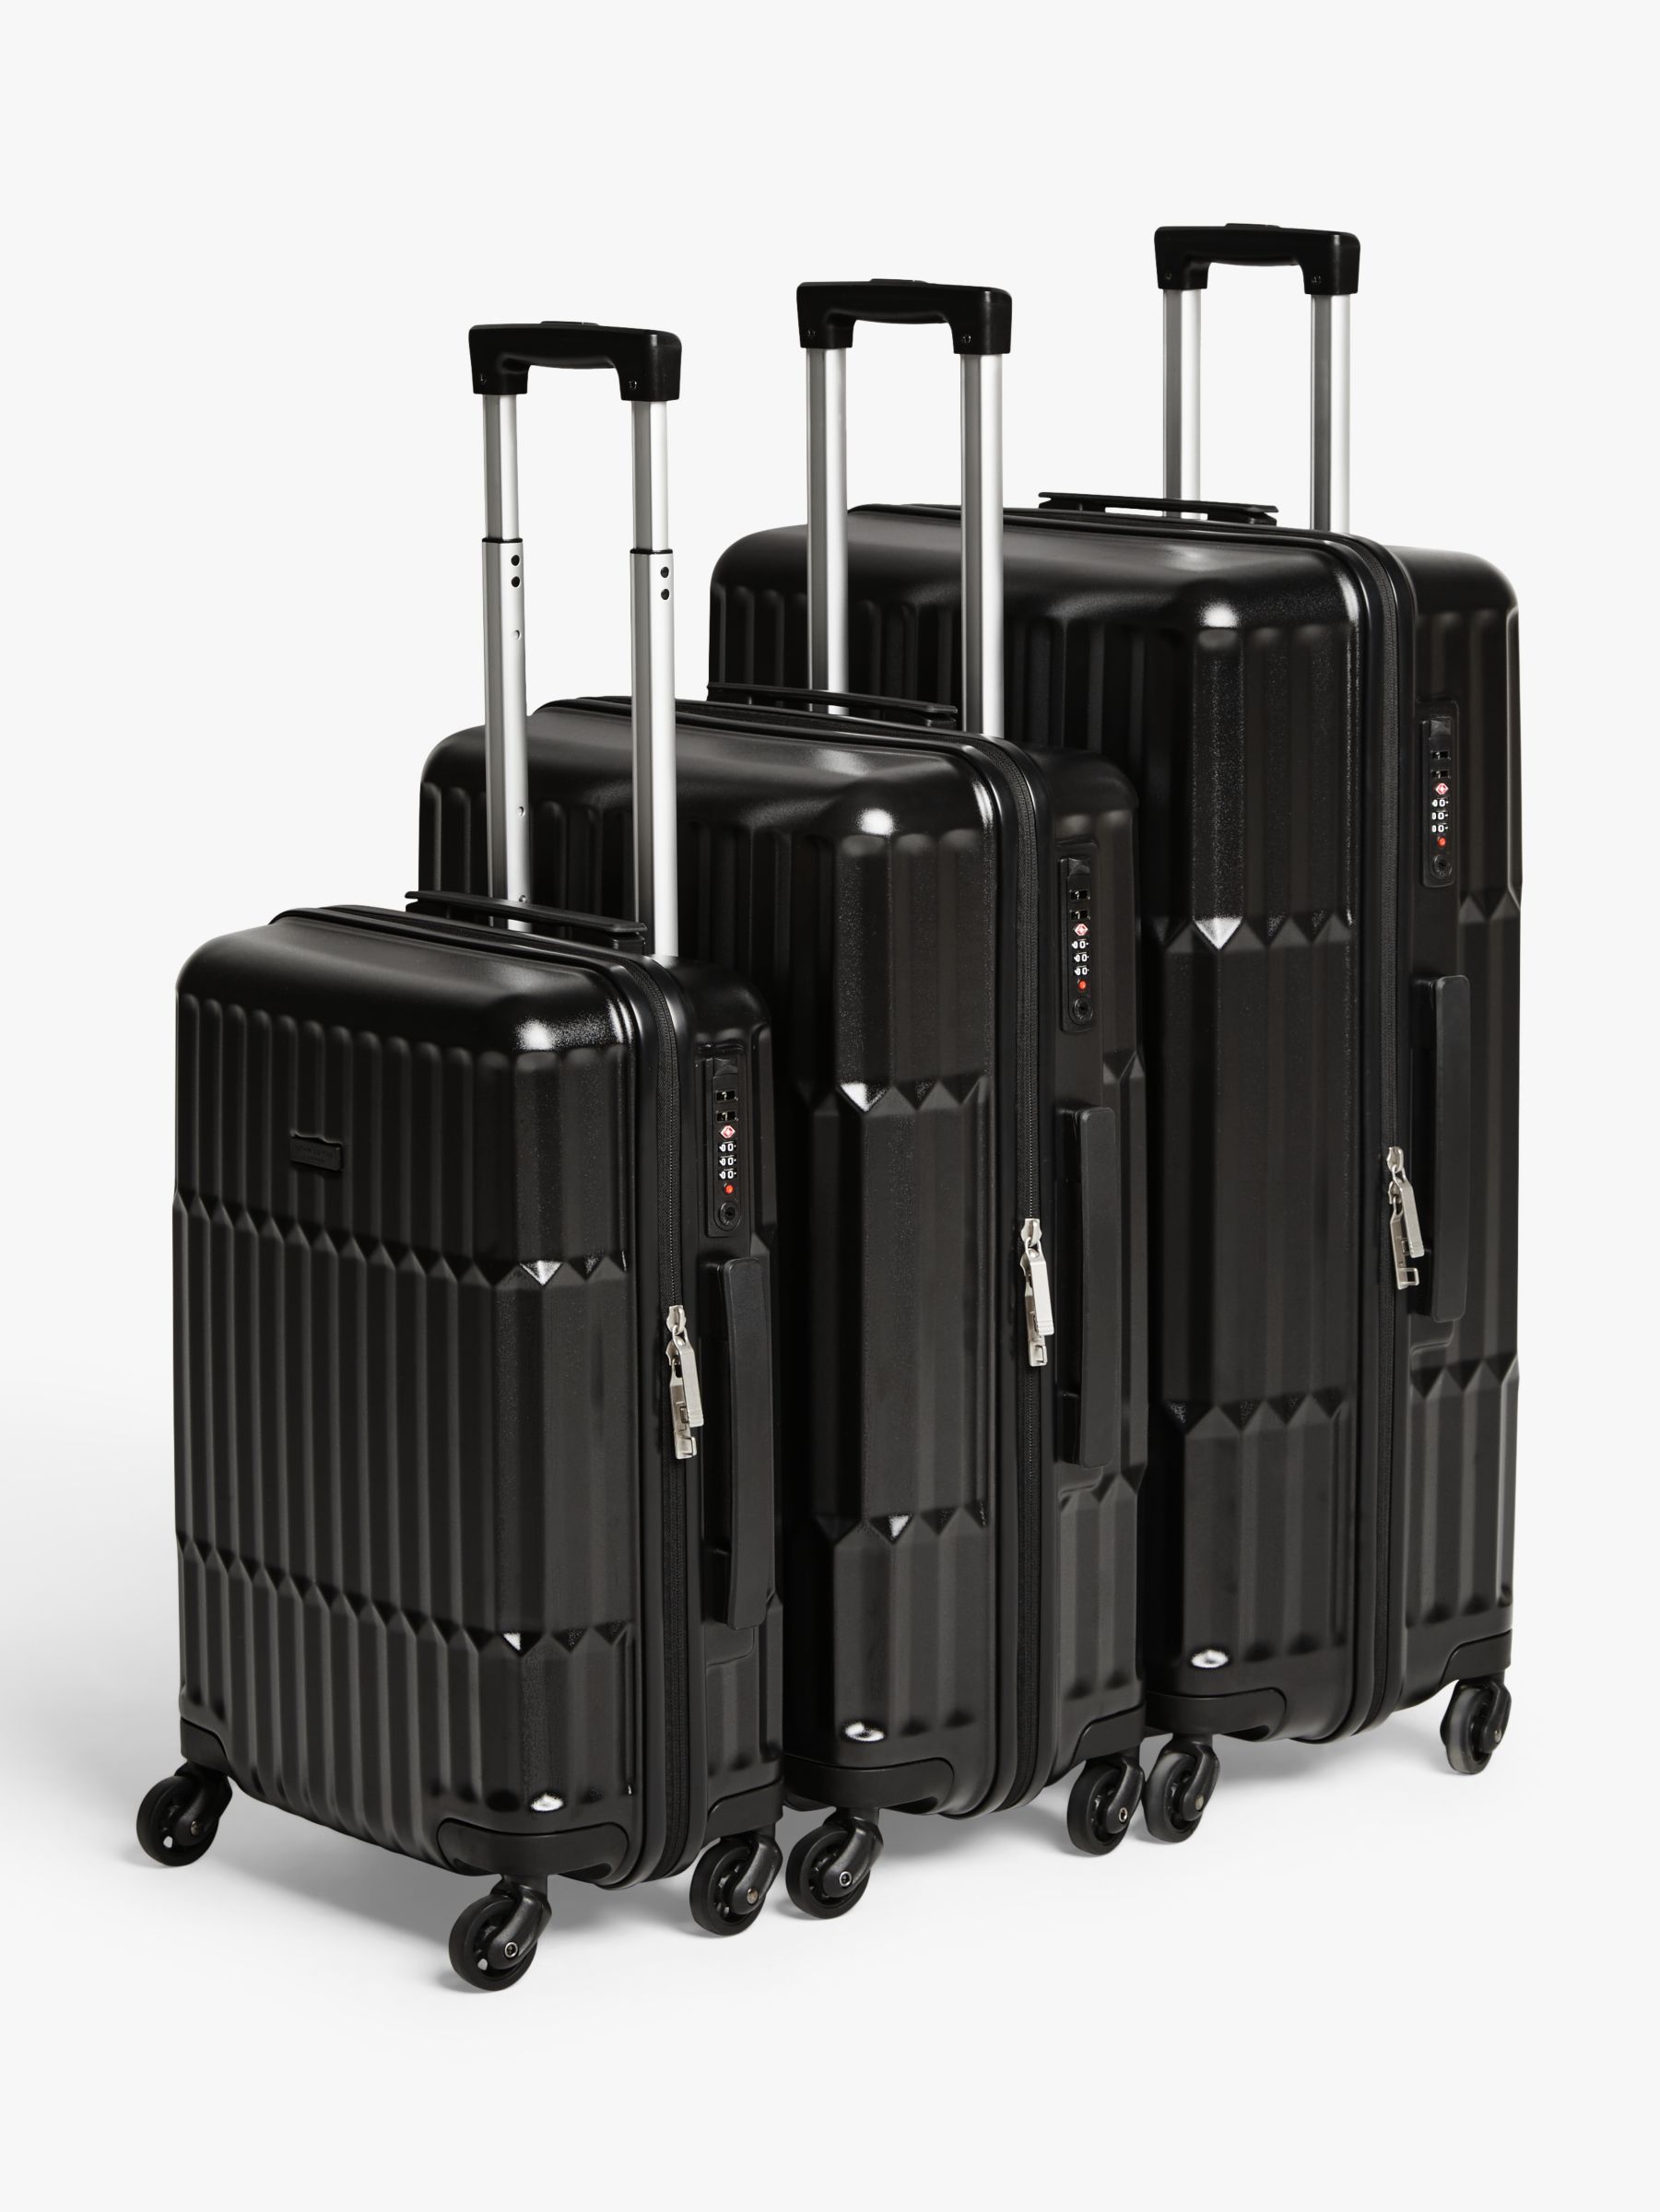 louis luggage bags set